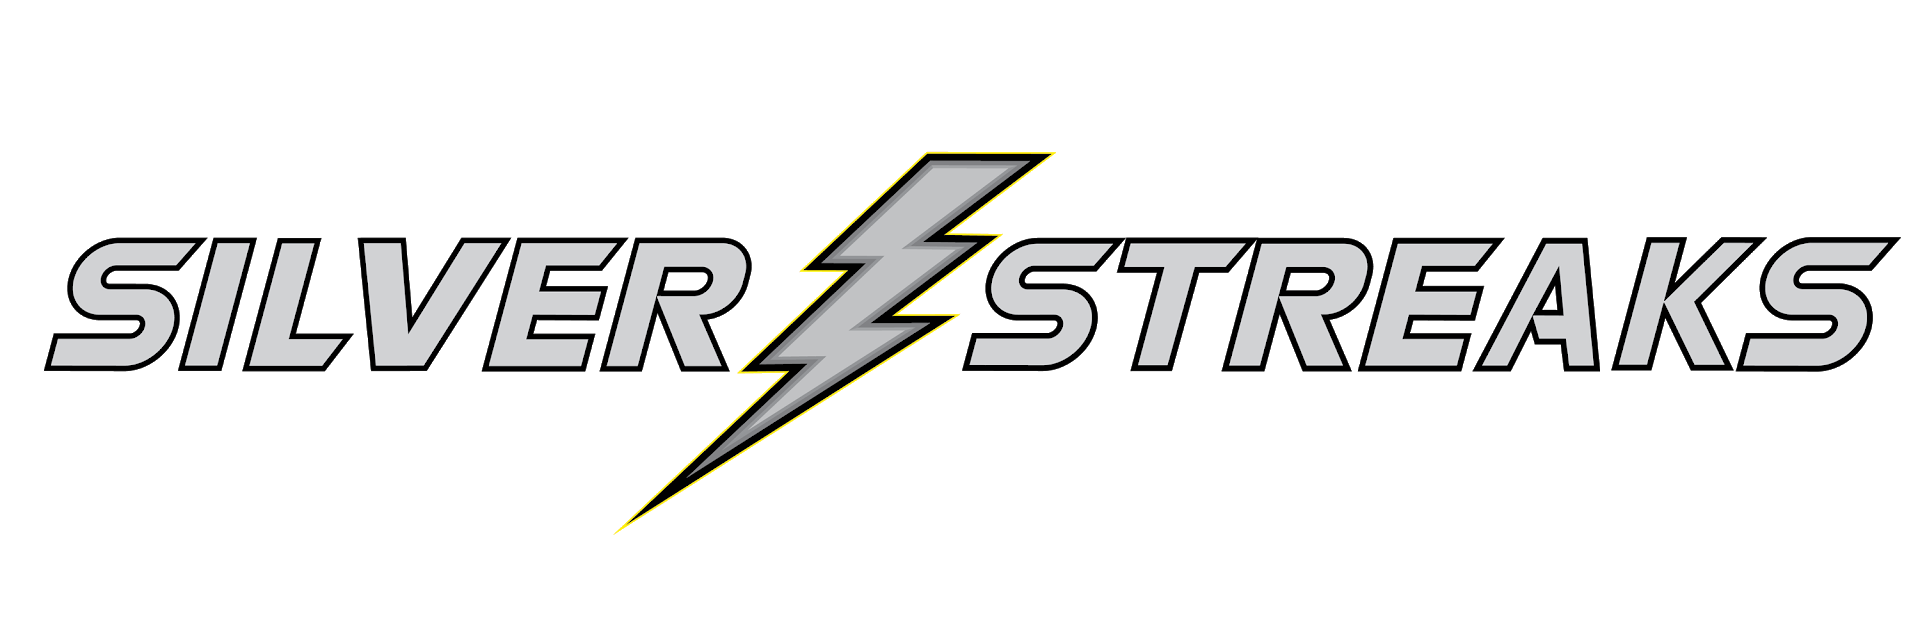 Silver Streak Logo - Silver Streaks Invite - Results